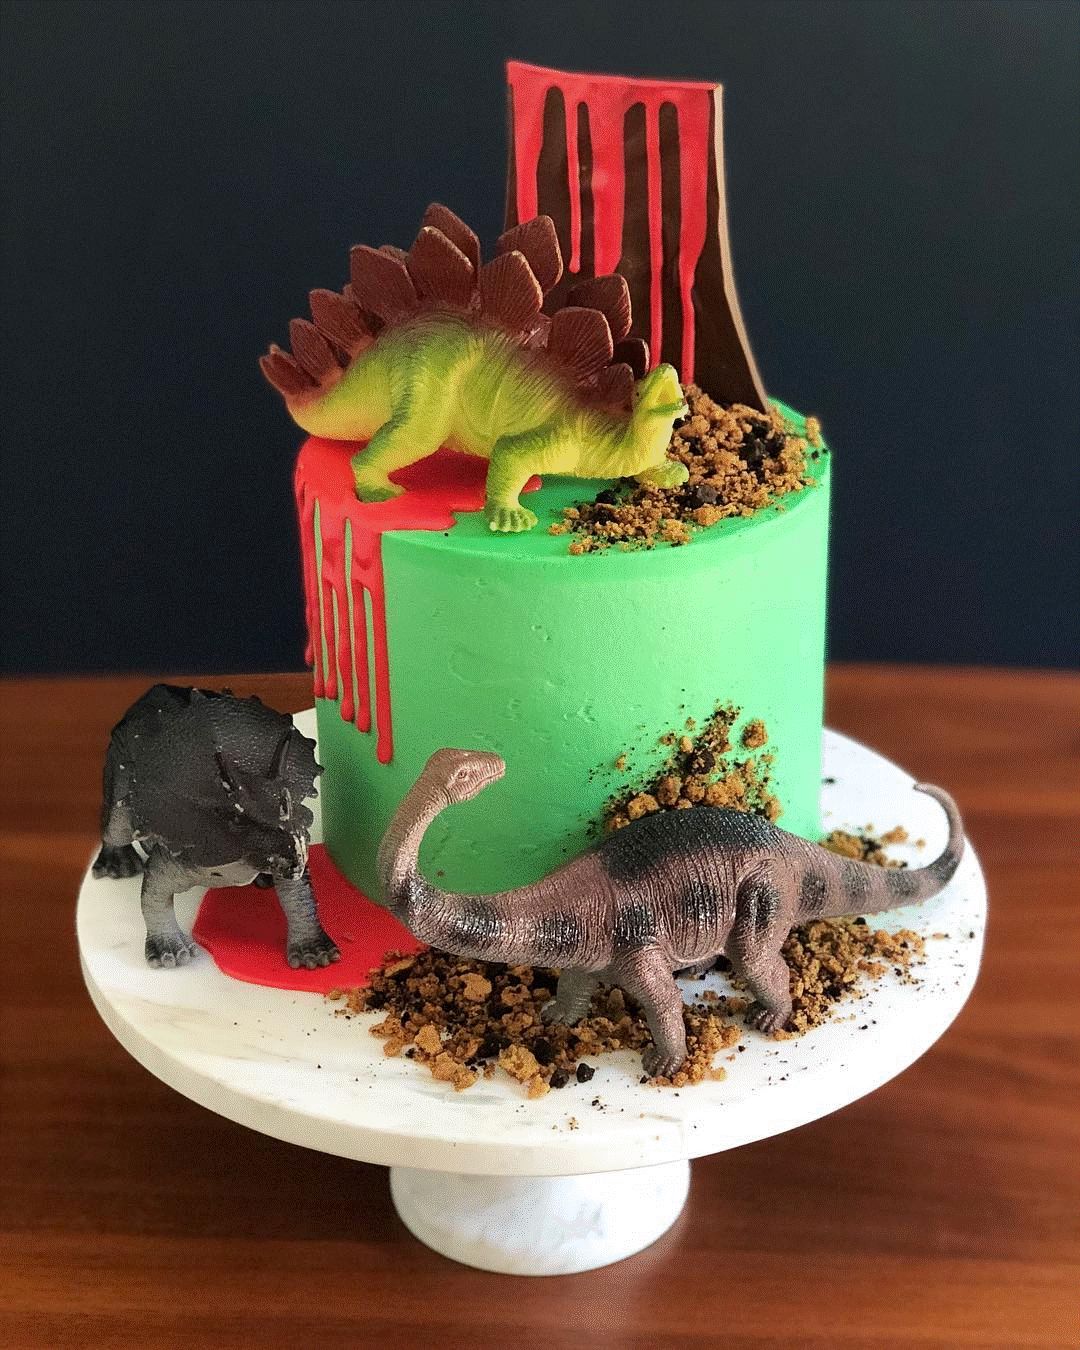 恐龙插尖造型蛋糕图片